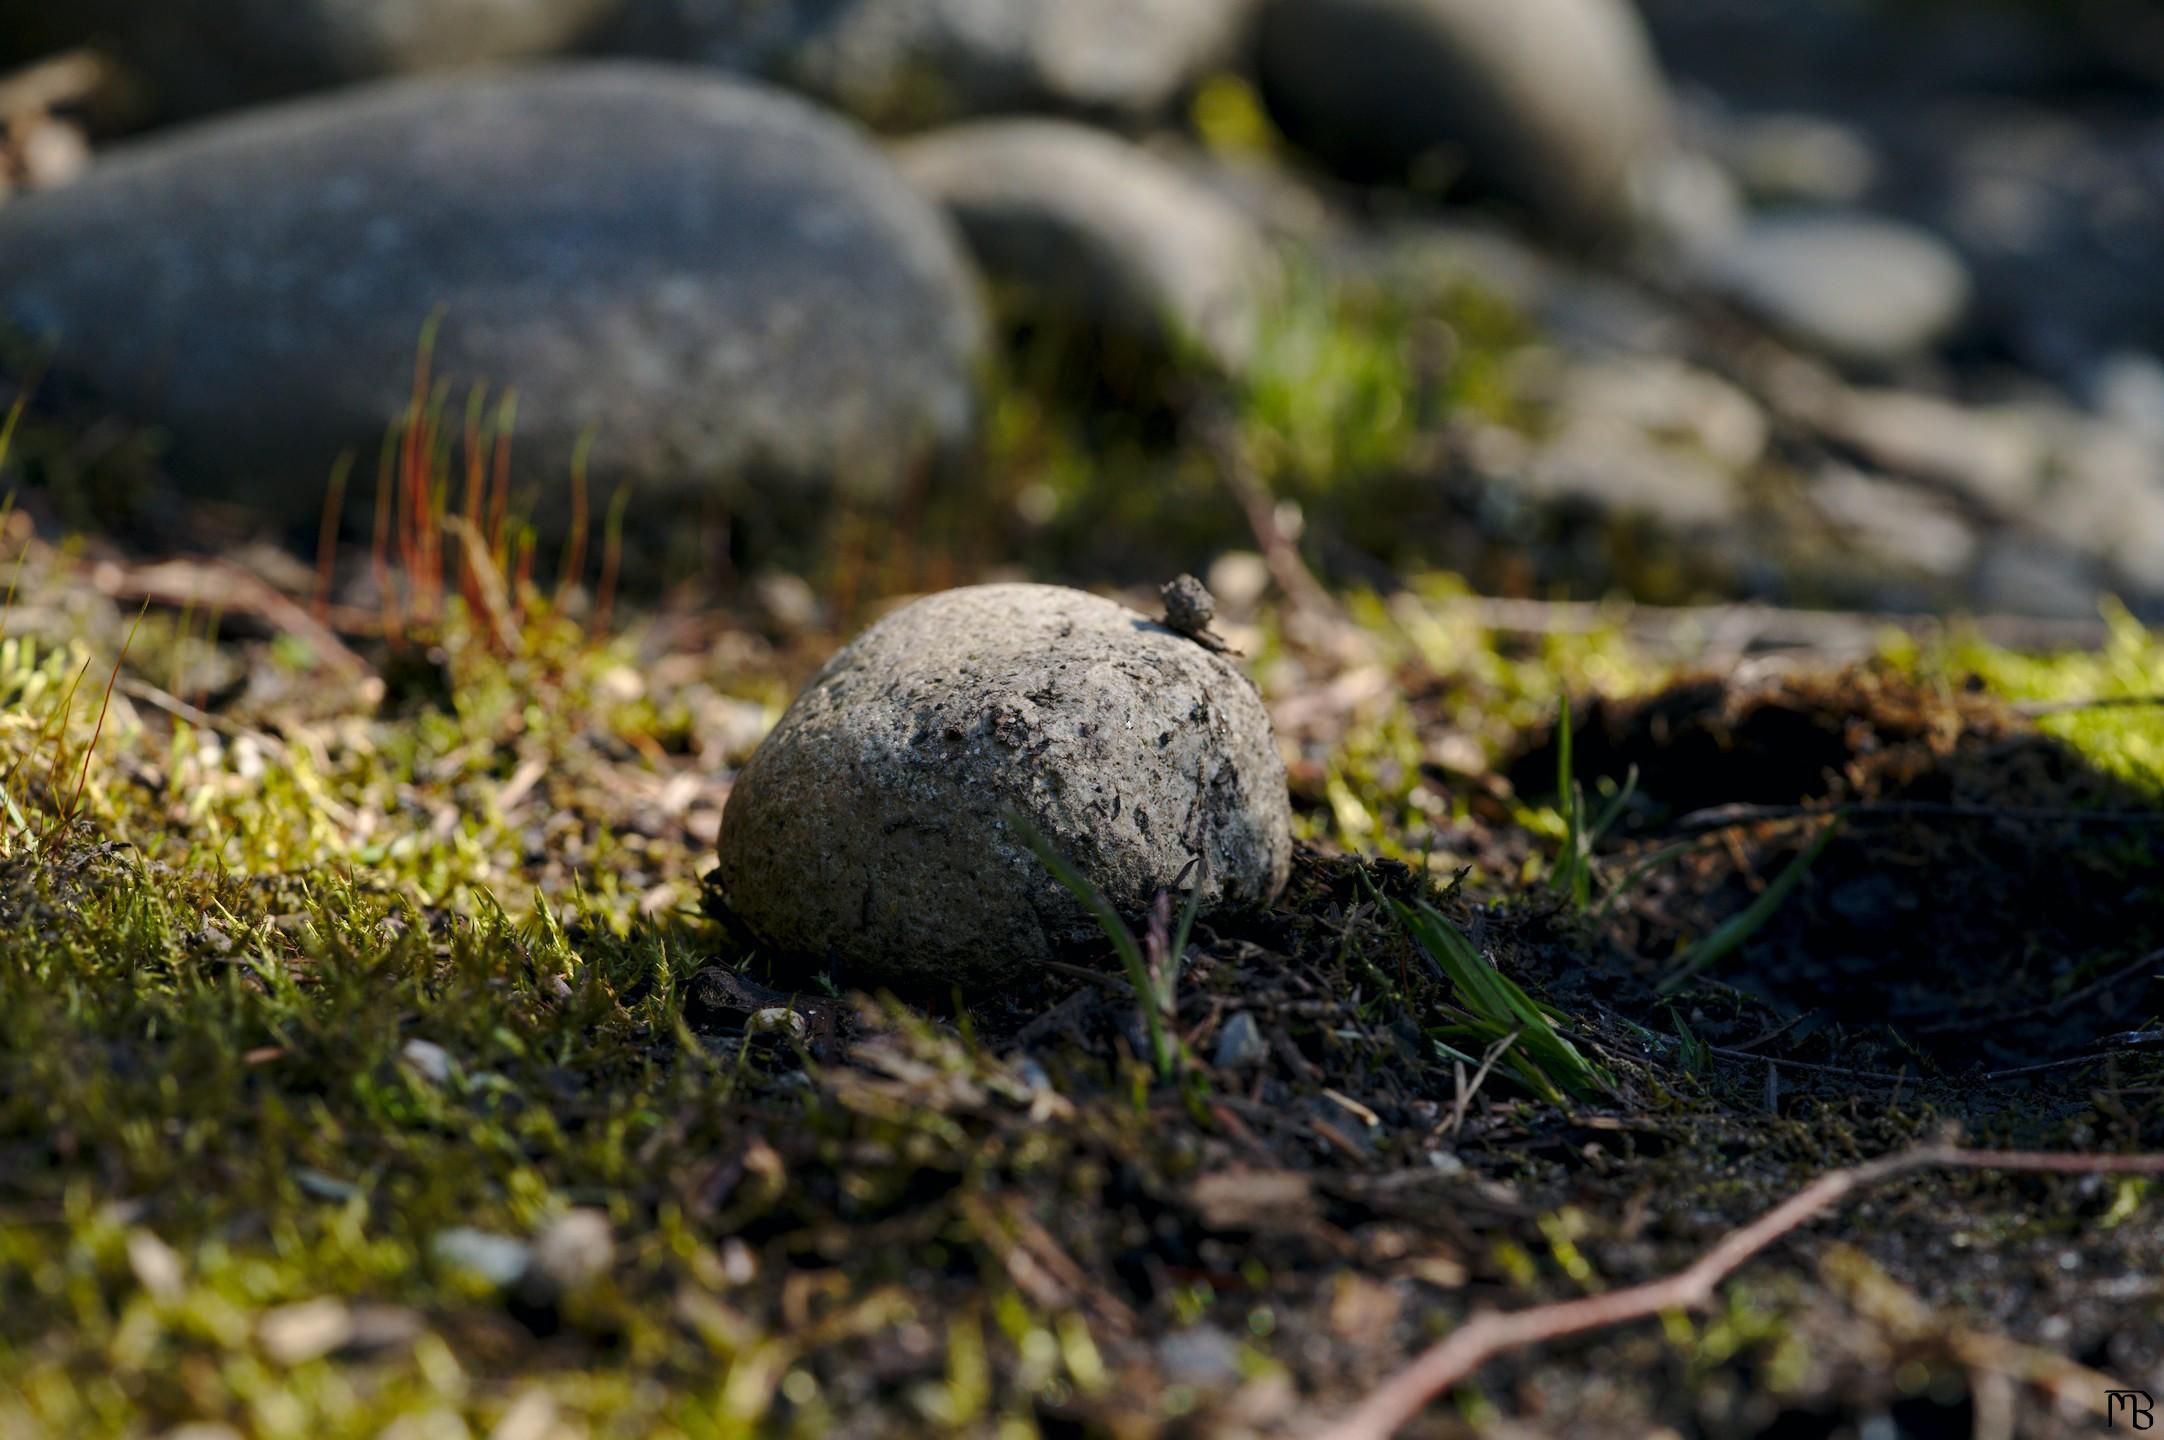 Stone laying amongst the grass